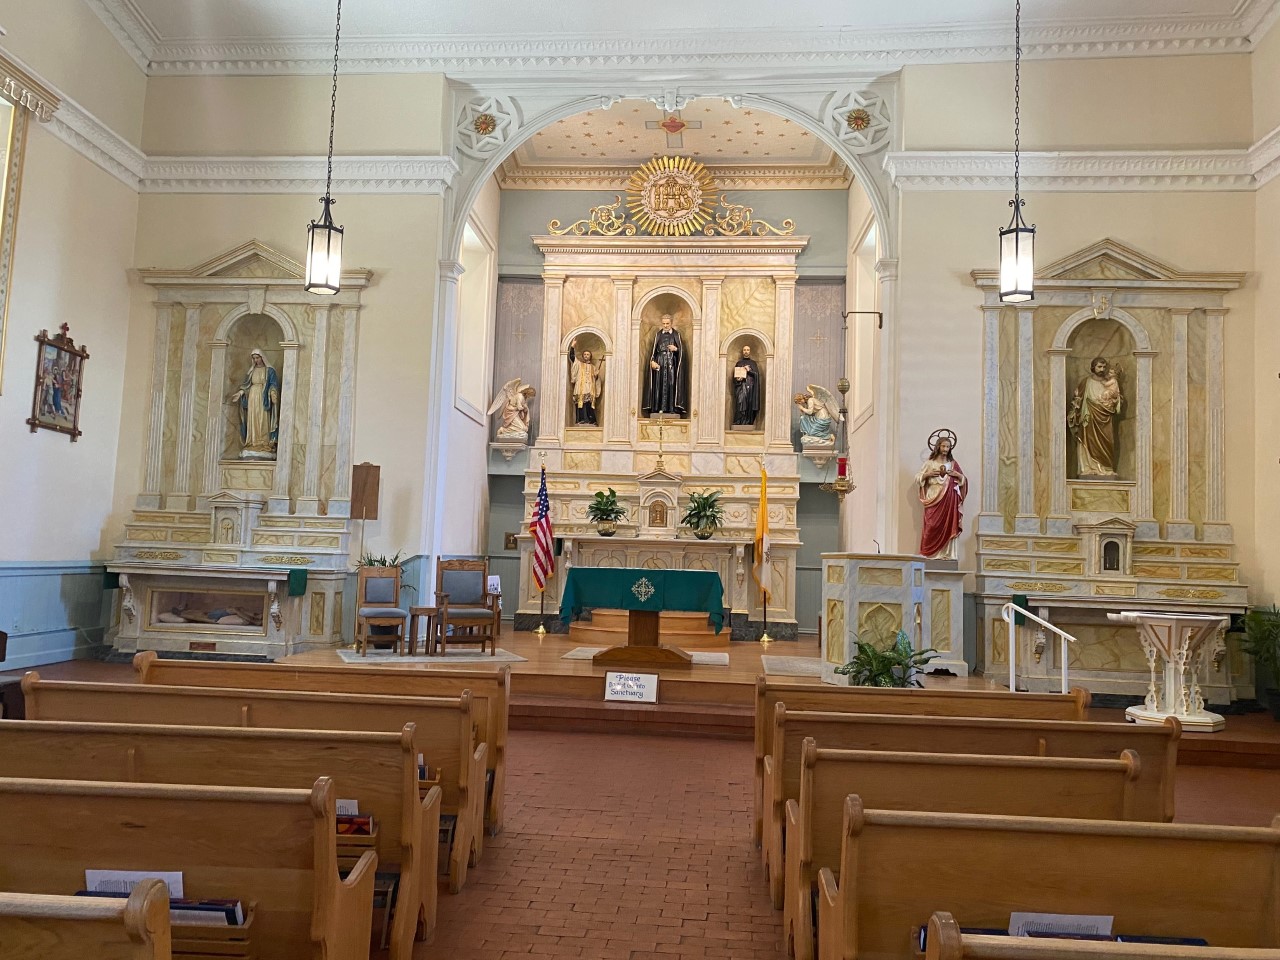 The inside and altar of San Felipe de Neri Church